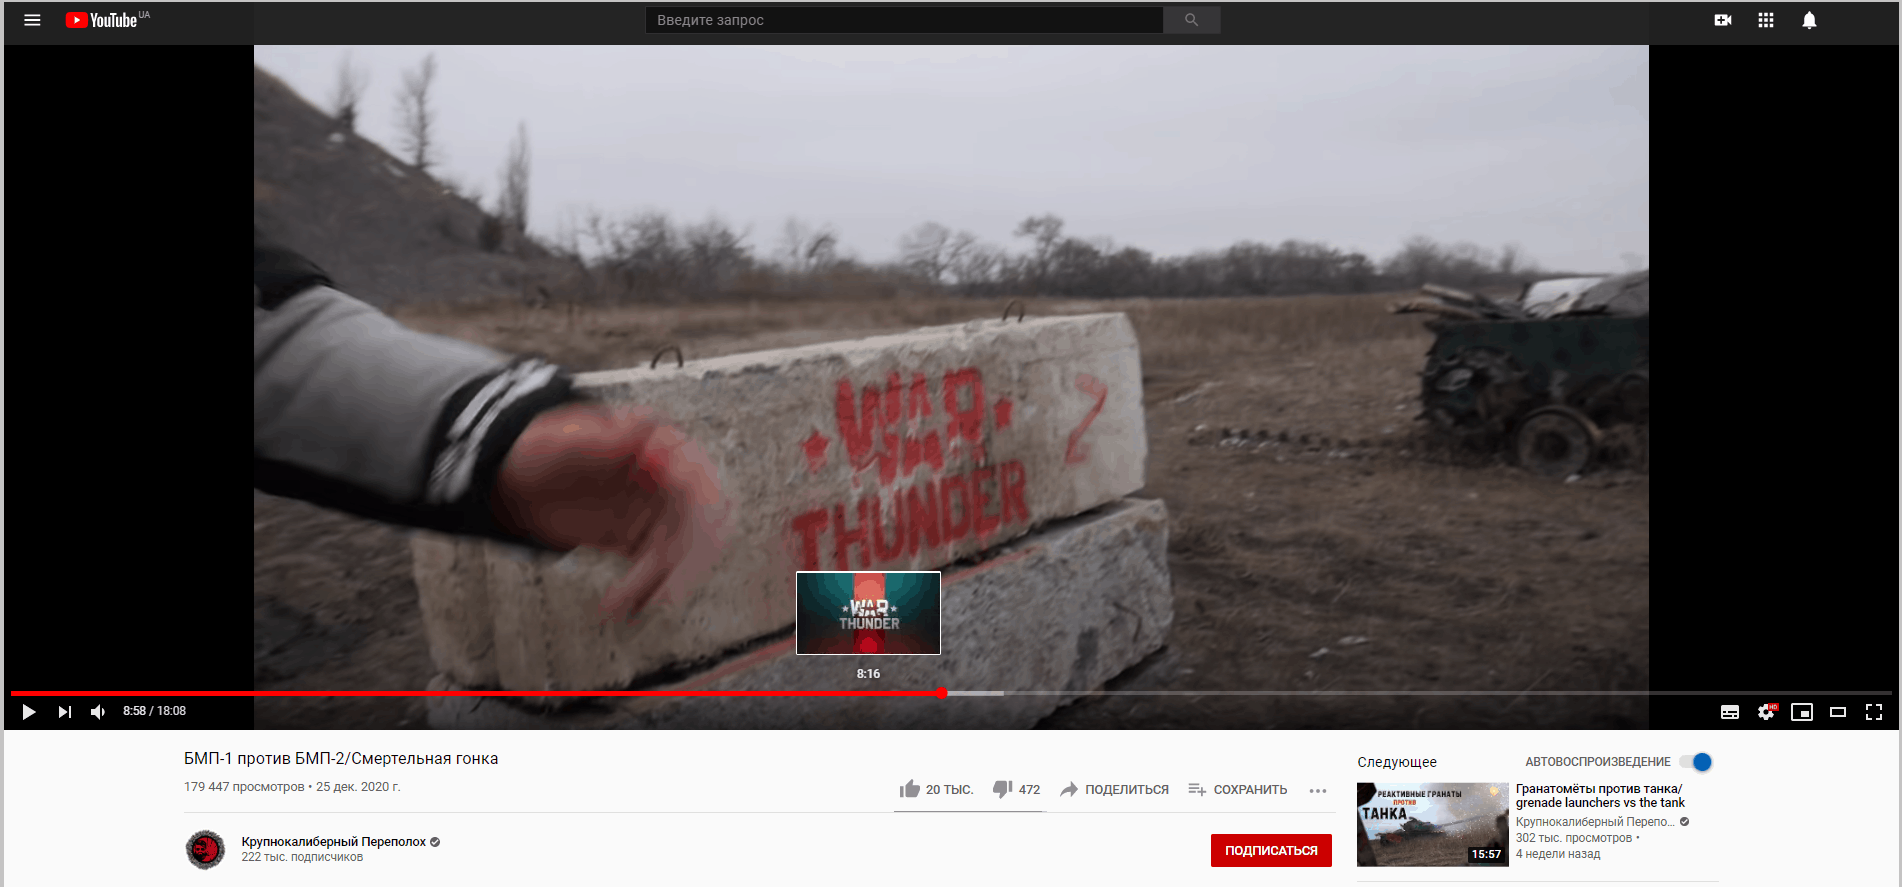 Відео з окупованої частини Донбасу з рекламою гри «War Thunder»